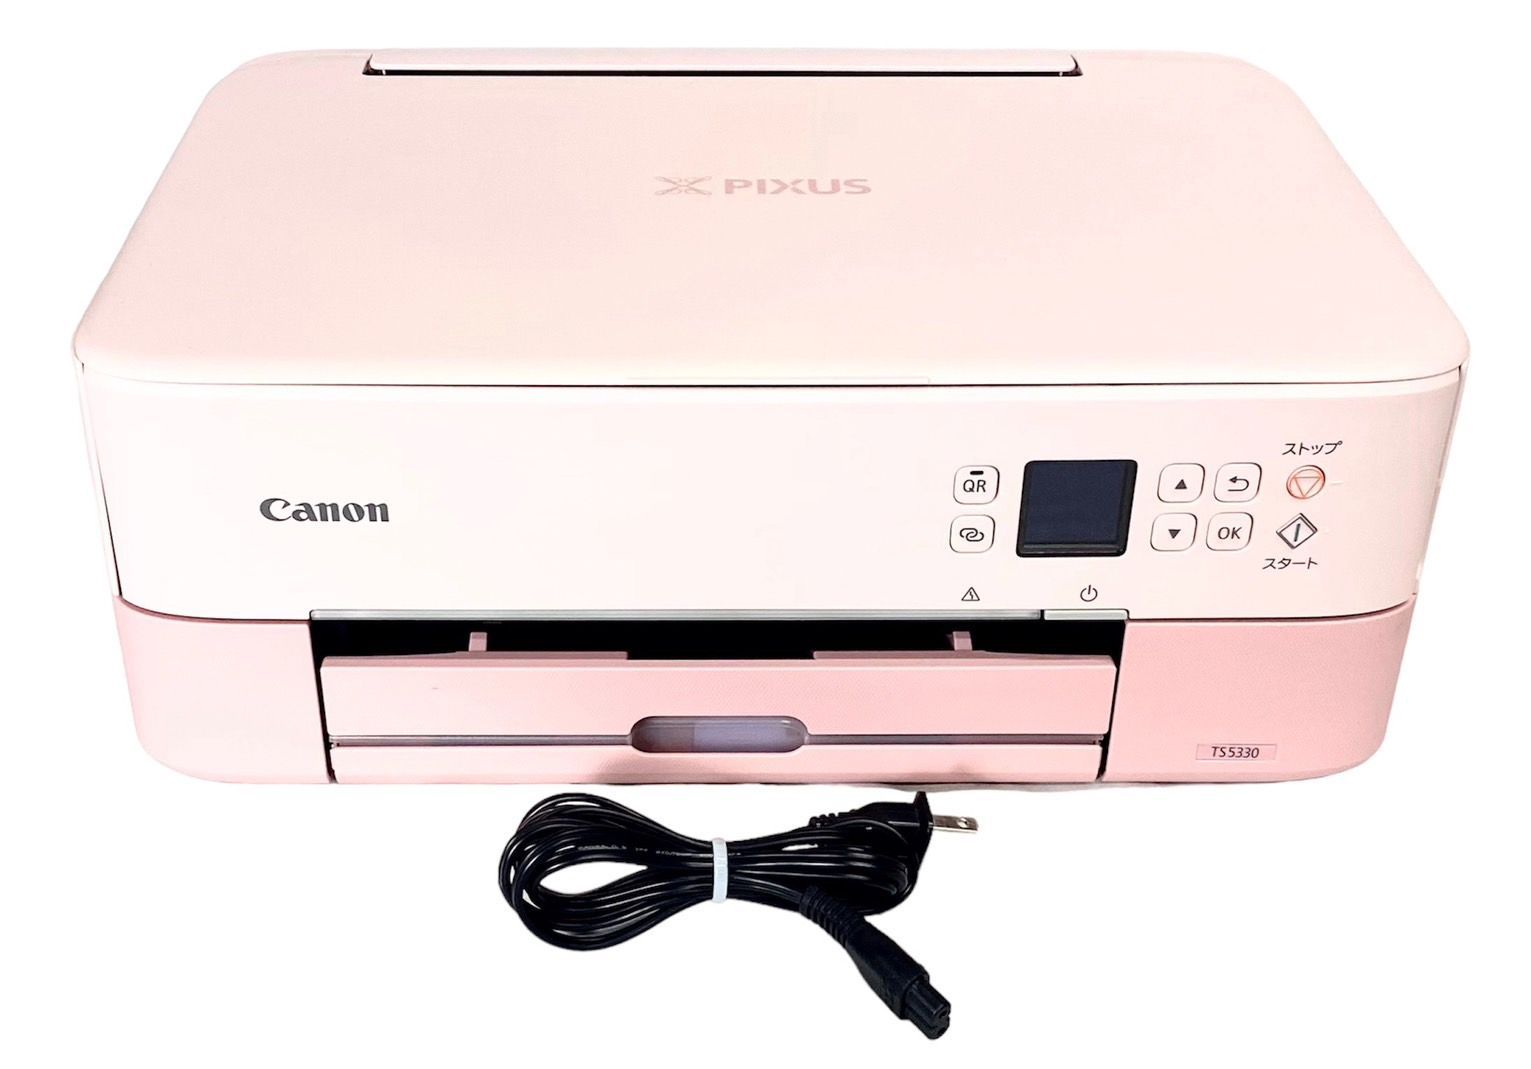 Canon PIXUS TS5330 ピンク インクジェット複合機 プリンター - PC周辺機器